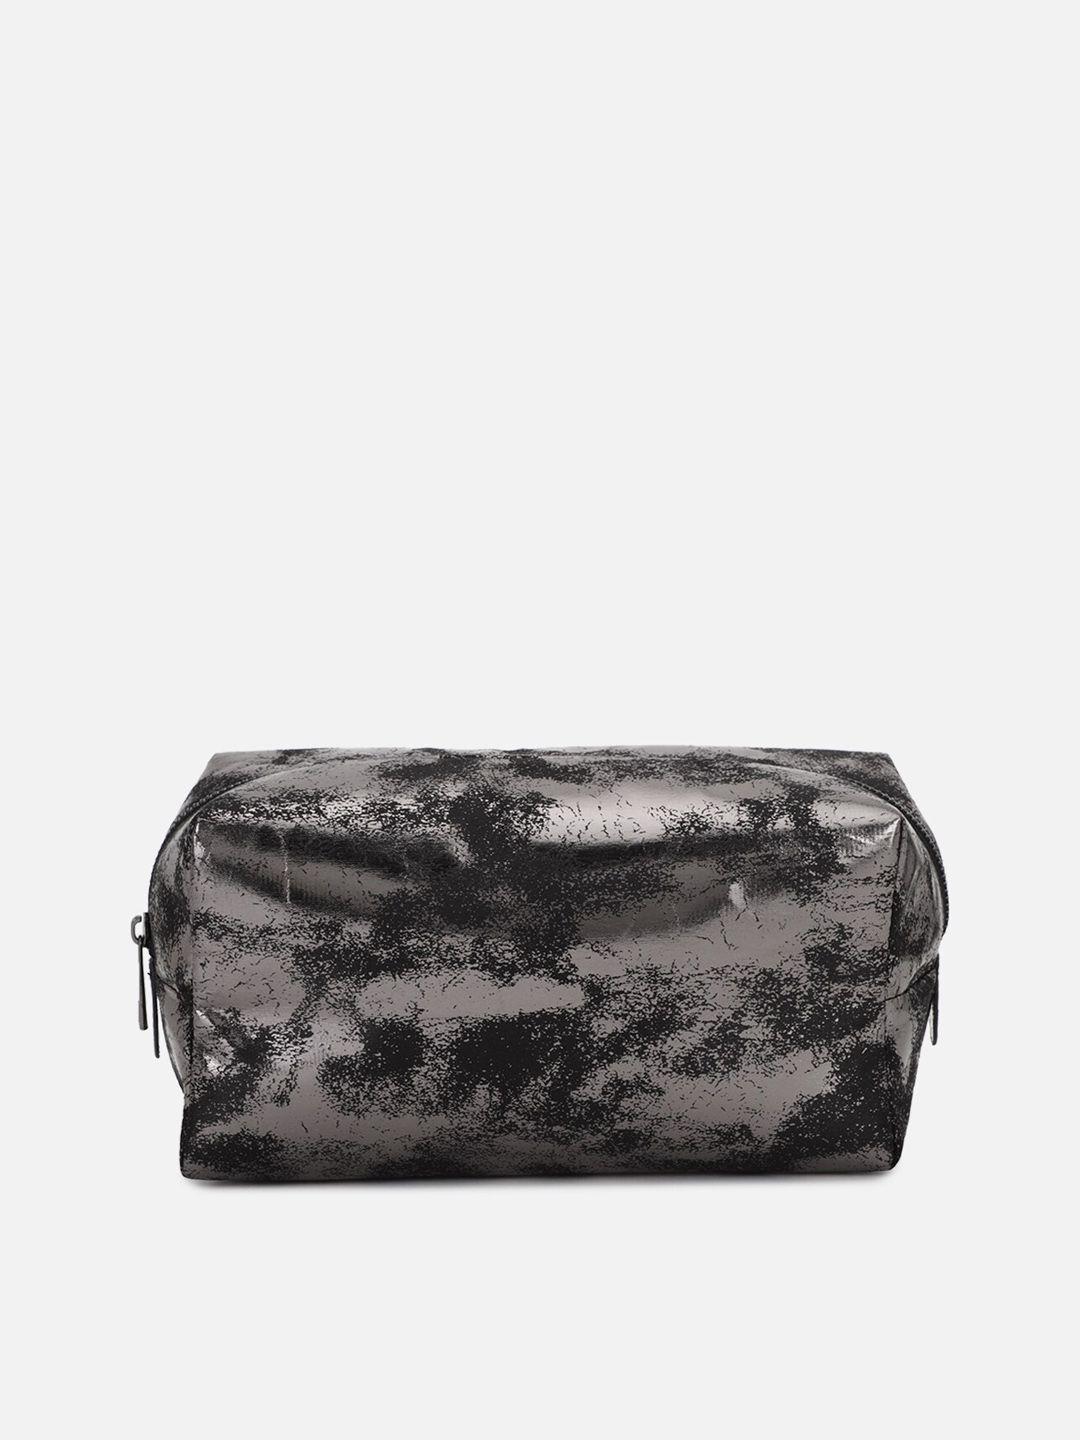 forever 21 black embellished pu swagger handheld bag